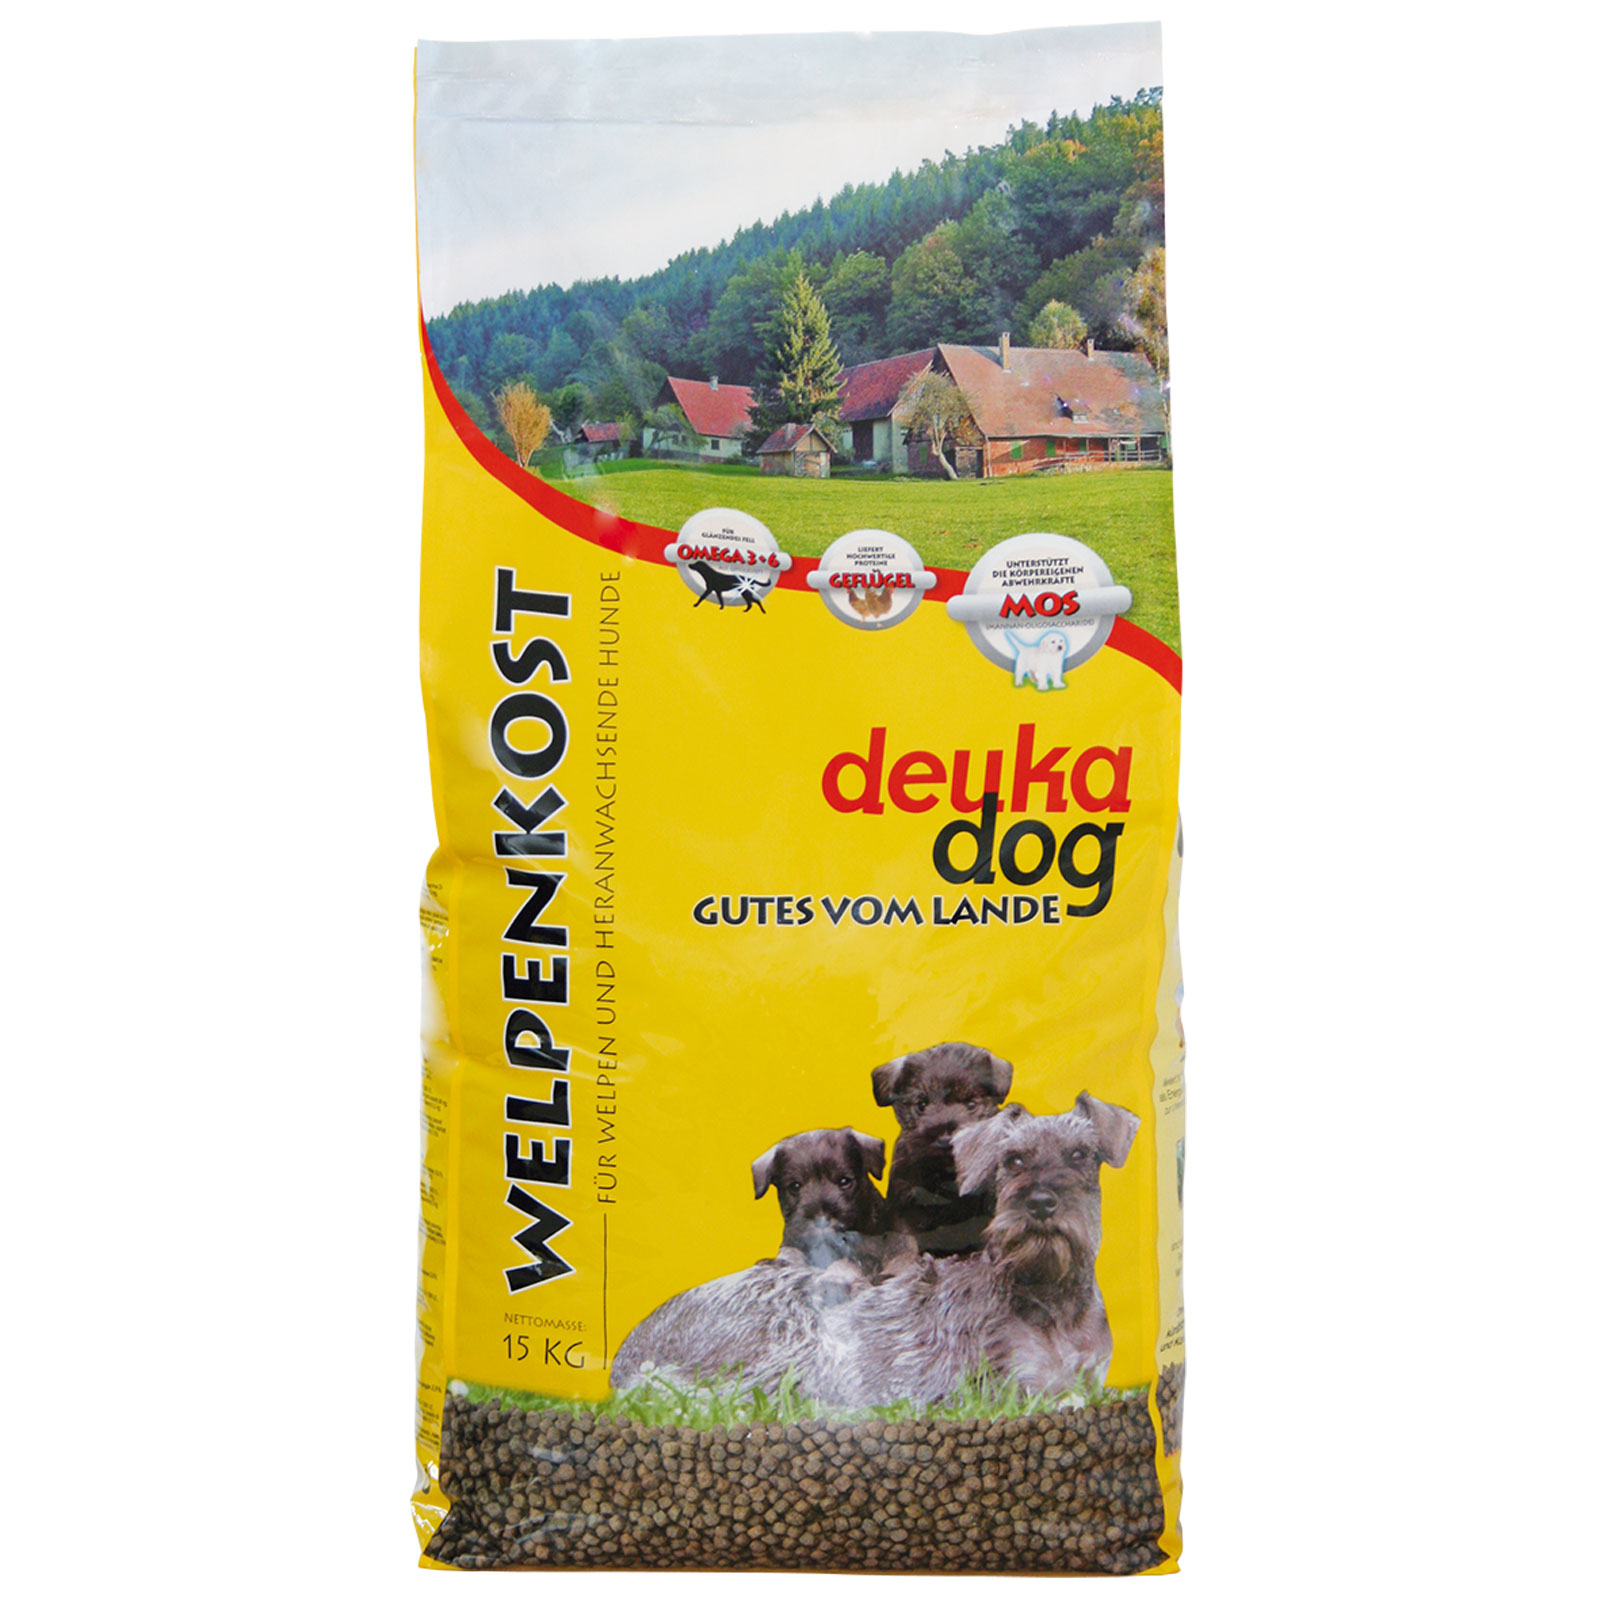 Deuka Dog Puppy food Welpenkost 5 kg